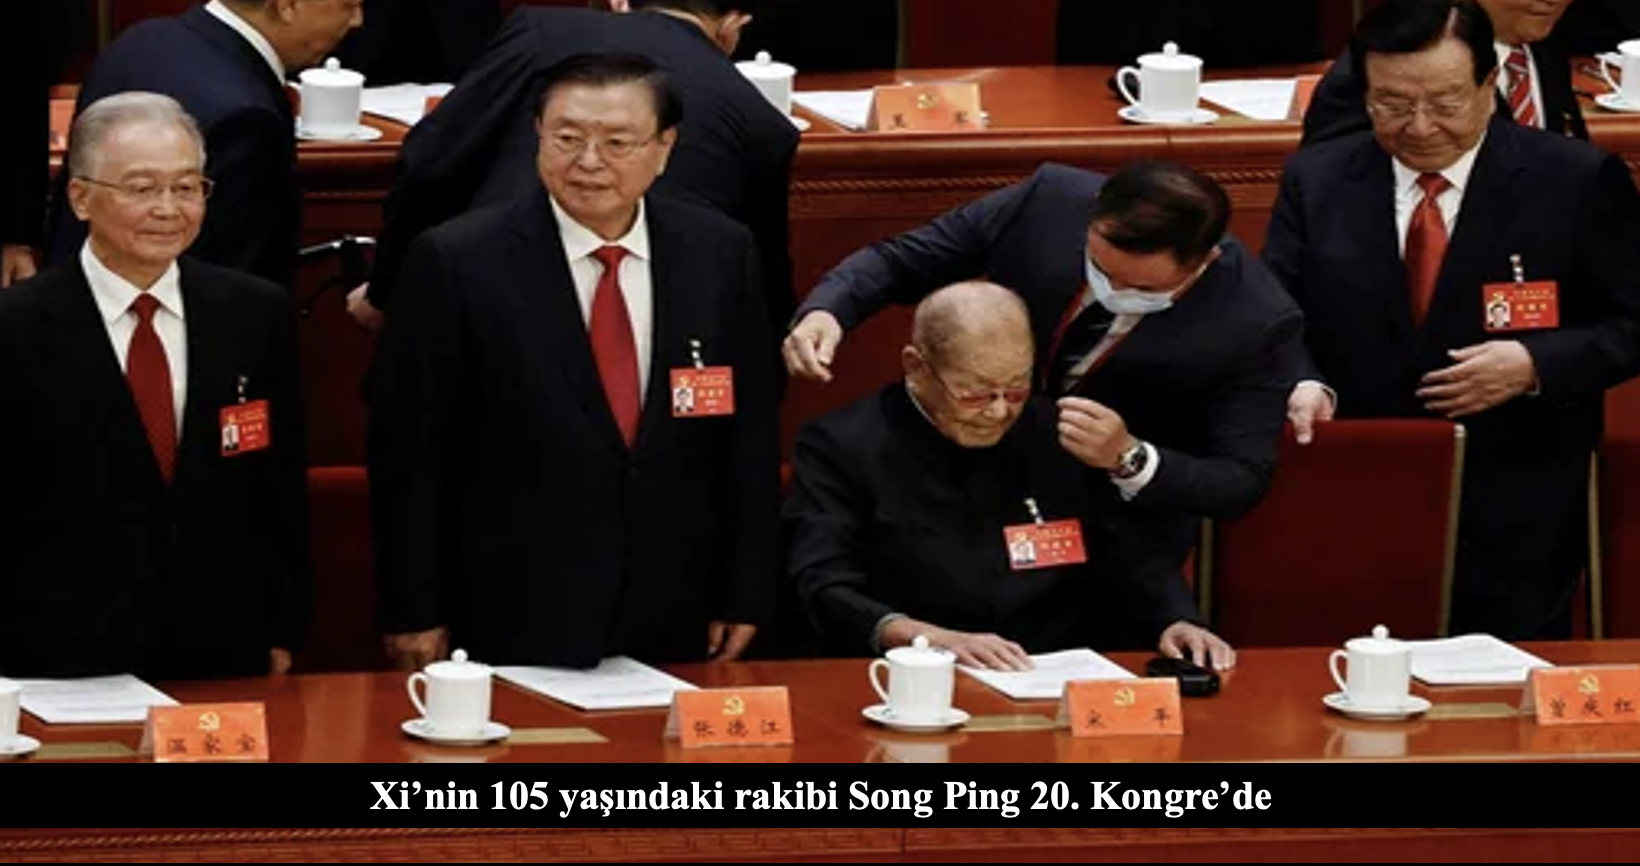 Xi’nin 105 yaşındaki rakibi Song Ping 20. Kongre’de